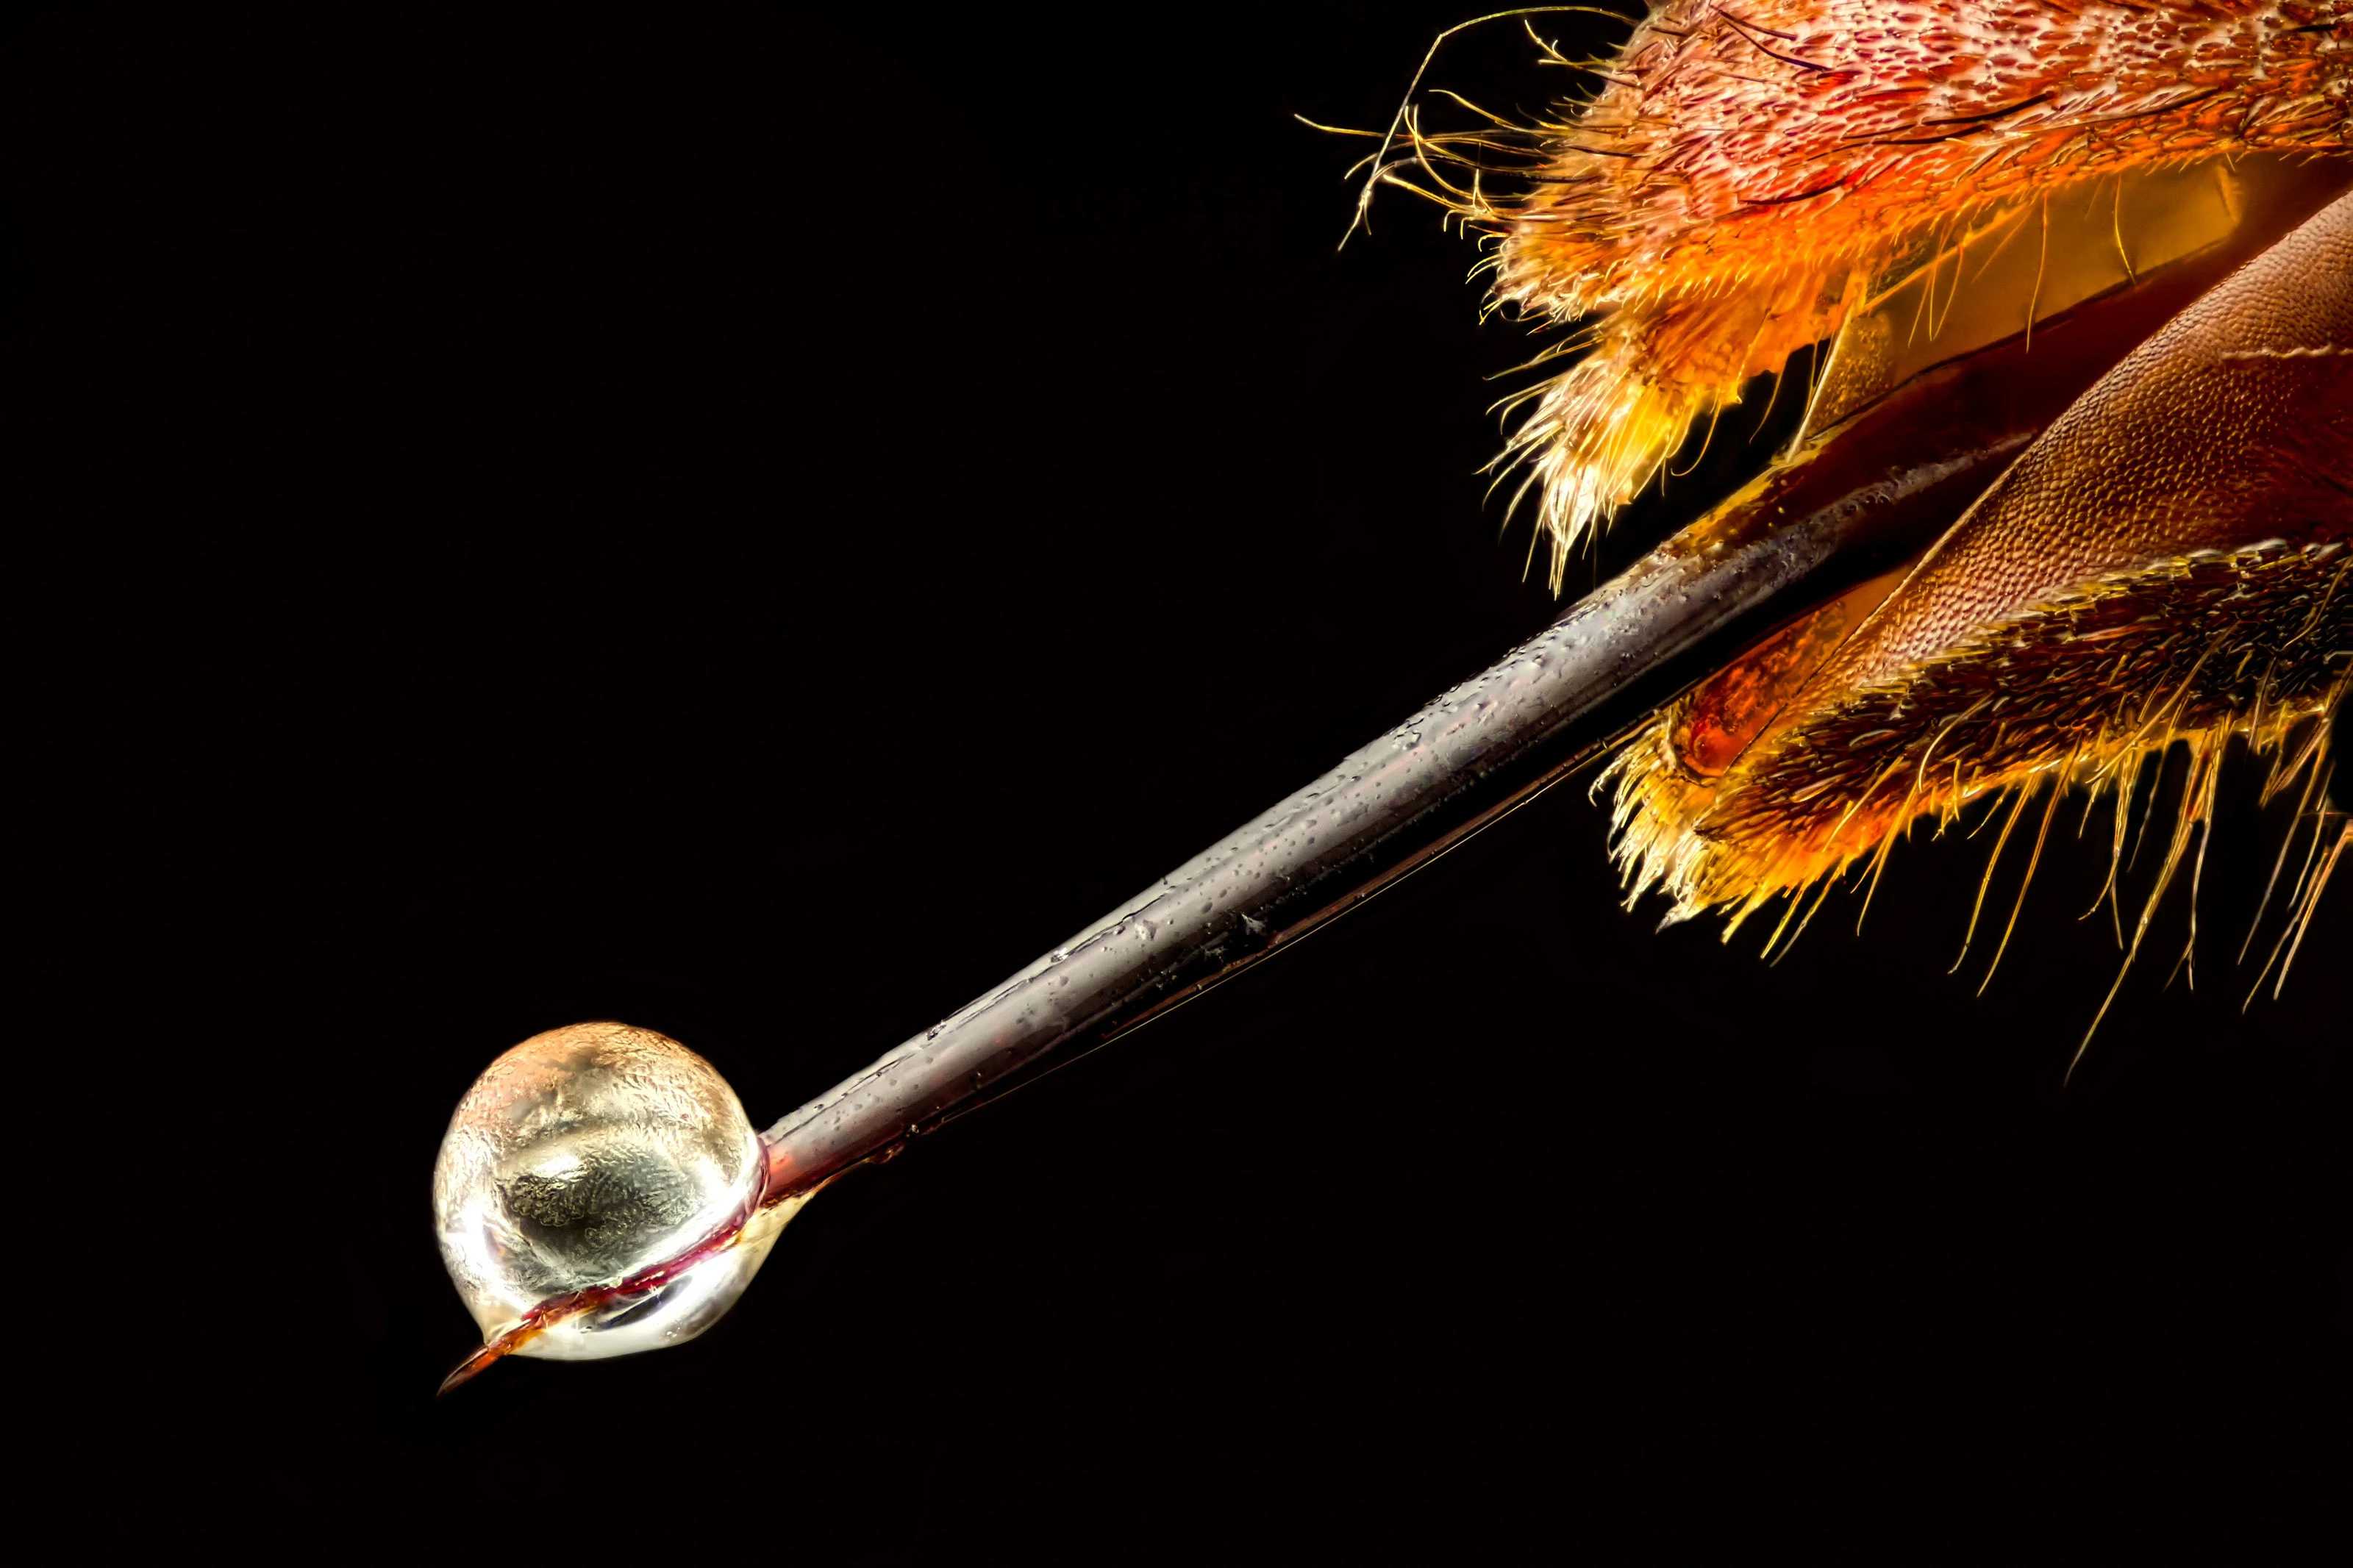 Биоинженеры предложили переделать шприцы по образцу пчелиного жала